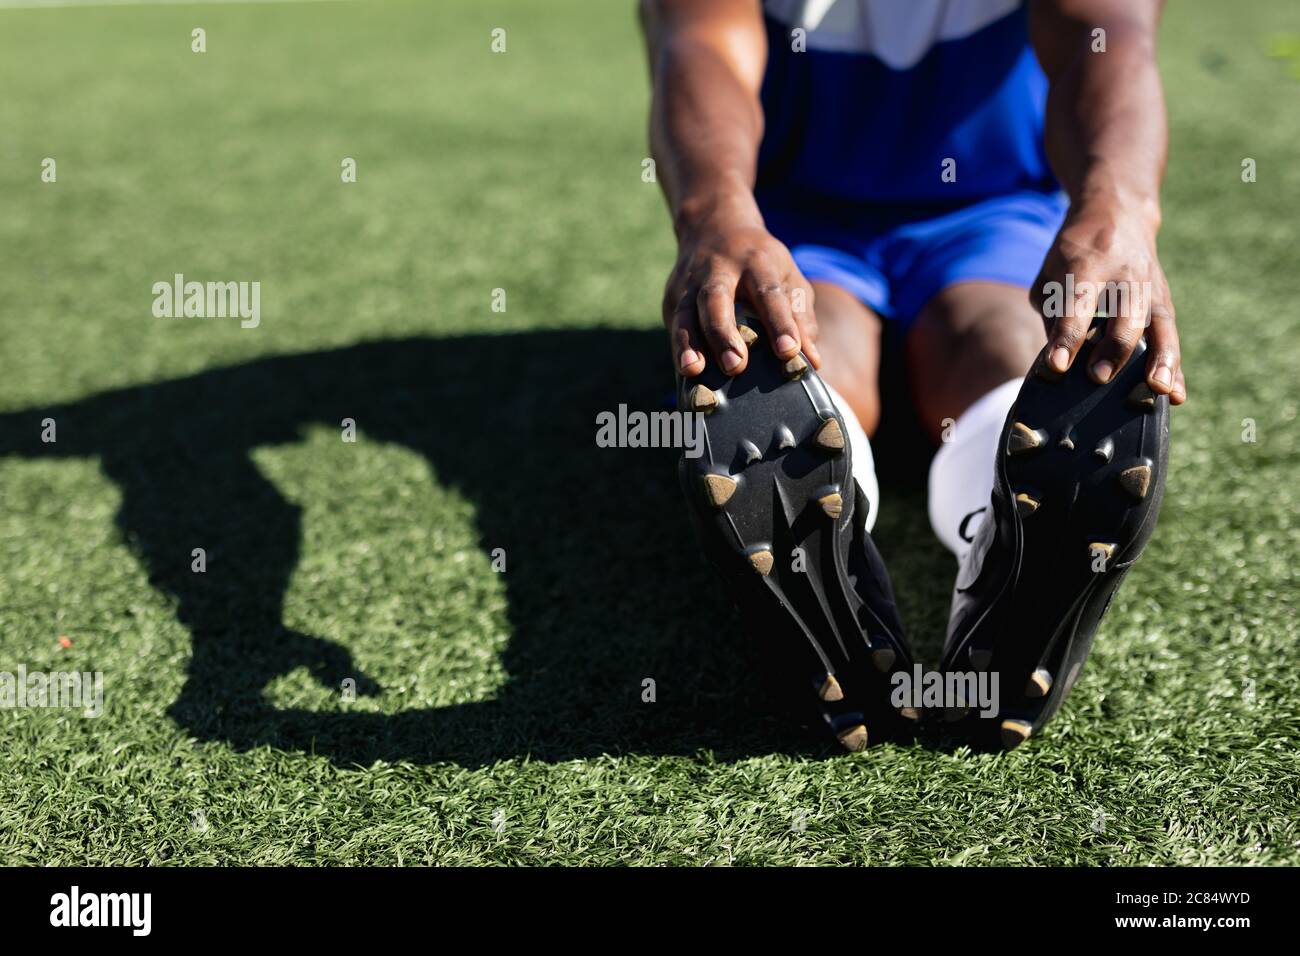 Joueur de football masculin de course mixte portant un entraînement d'équipe sur un terrain de sport au soleil, en s'échauffant s'étirant les jambes. Banque D'Images